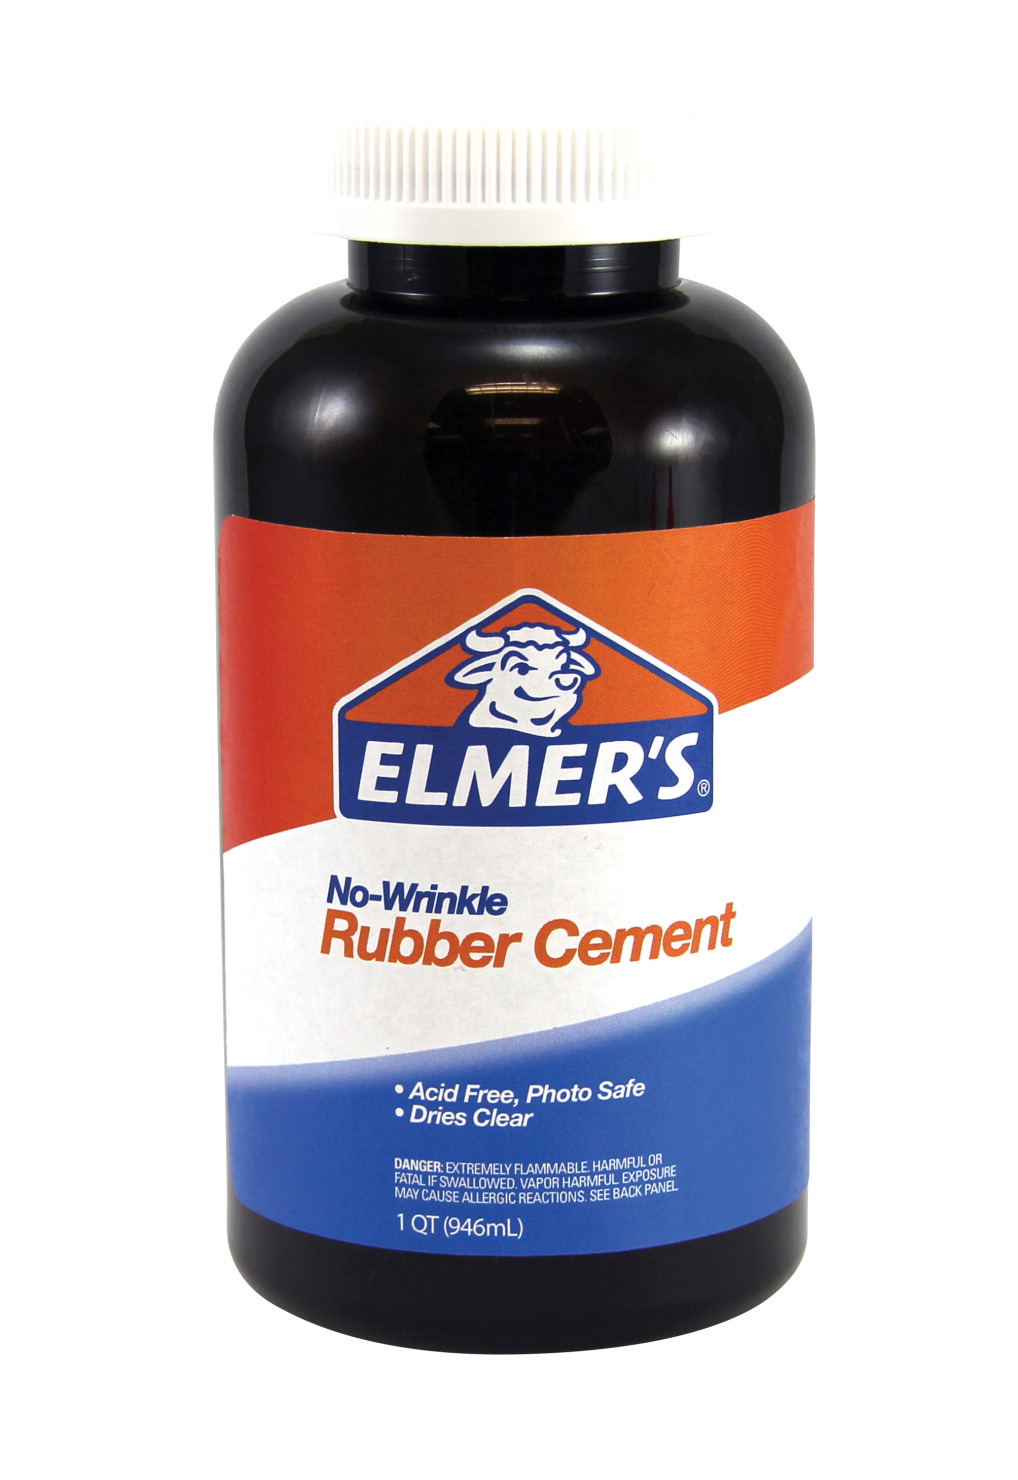 Rubber cement - Wikipedia